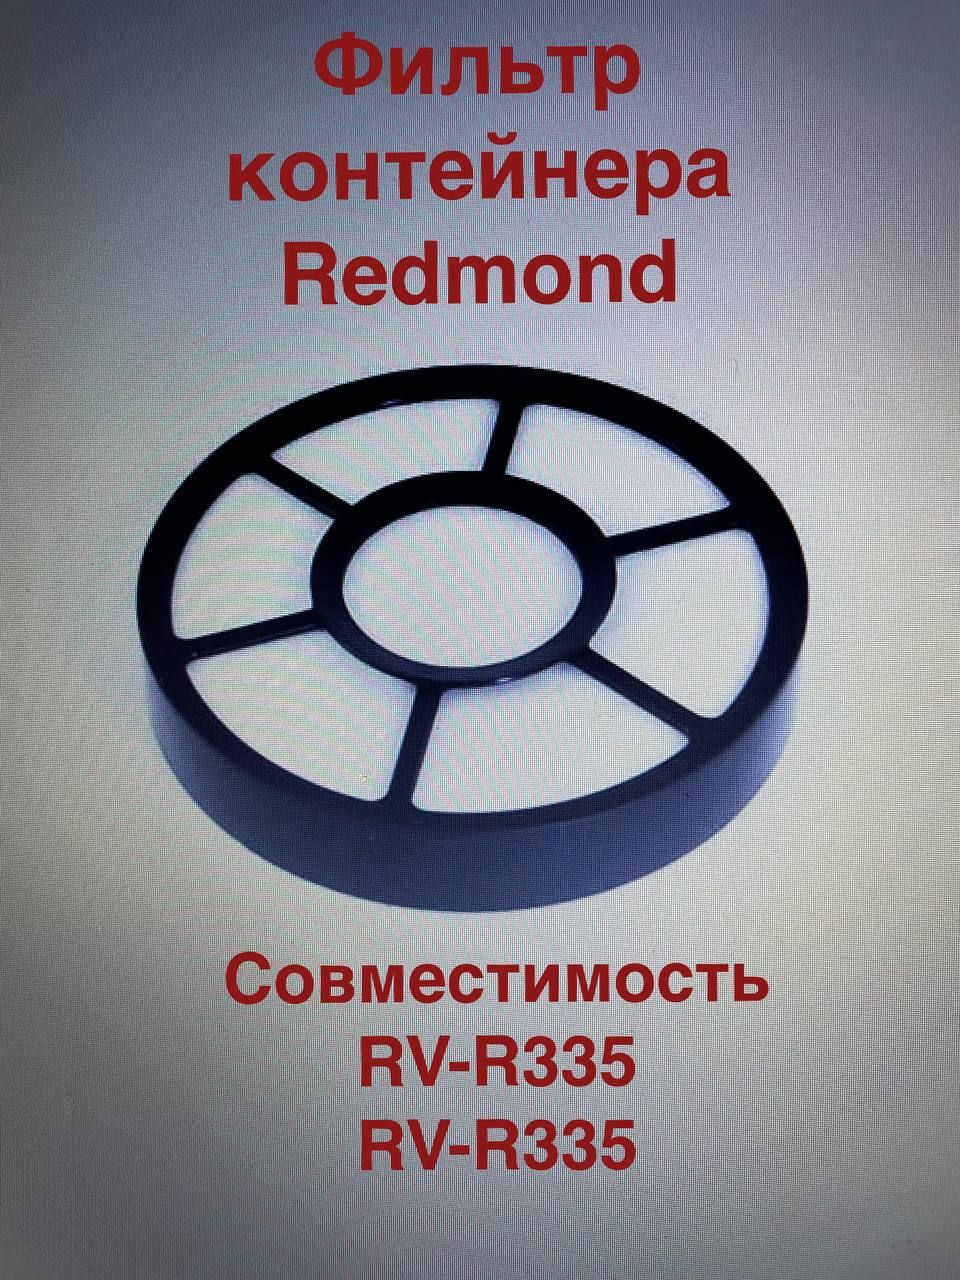 Купить фильтр для редмонд. Фильтр для пылесоса Redmond RV-c335. Фильтр для пылесоса Redmond RV-c337. Фильтр контейнера RV-c335. Фильтр контейнера пылесоса Redmond RV-с316.